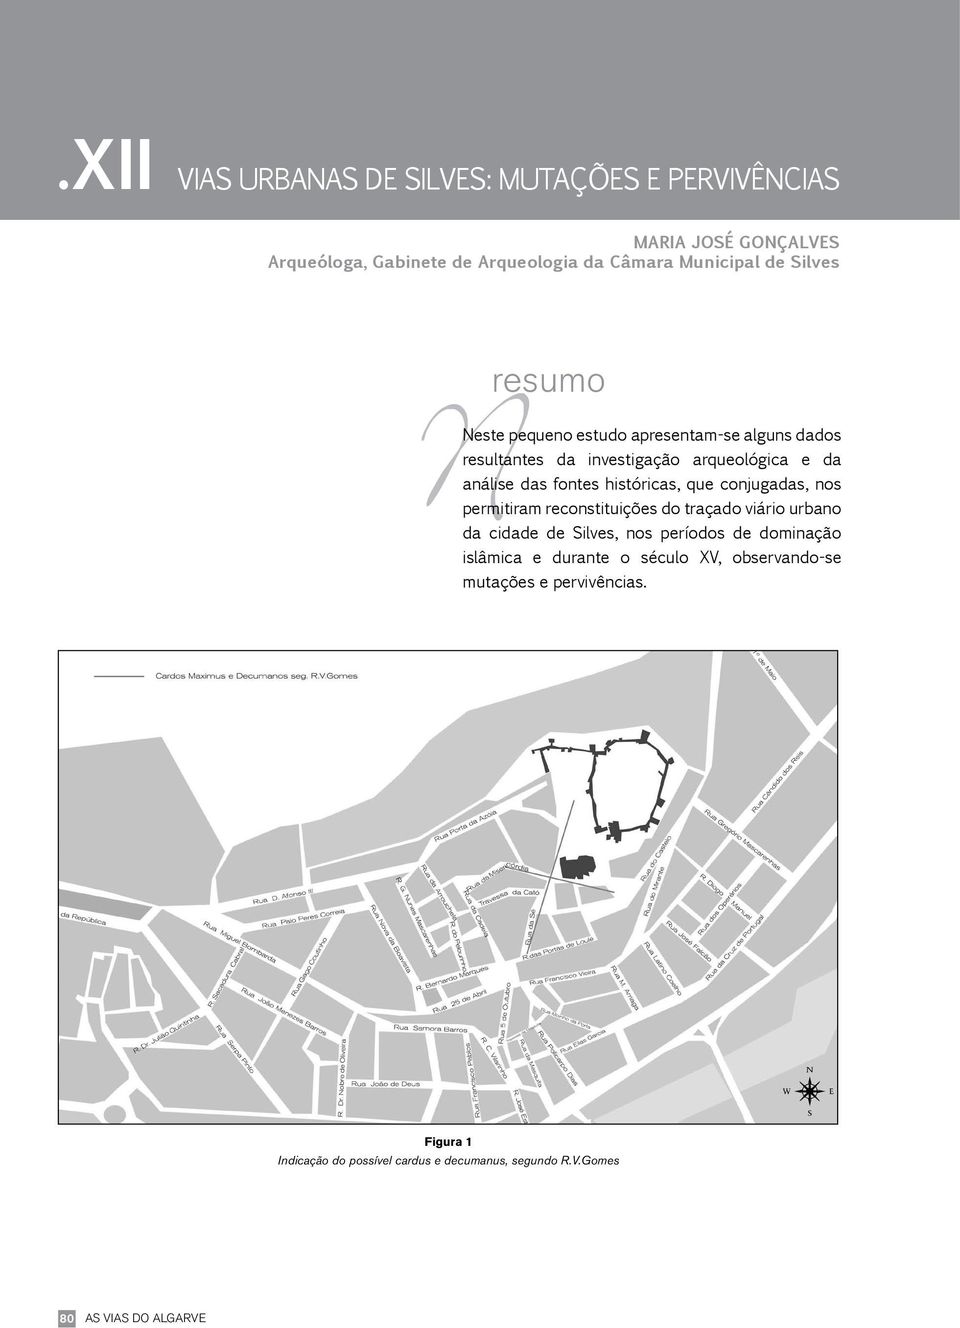 históricas, que conjugadas, nos permitiram reconstituições do traçado viário urbano da cidade de Silves, nos períodos de dominação